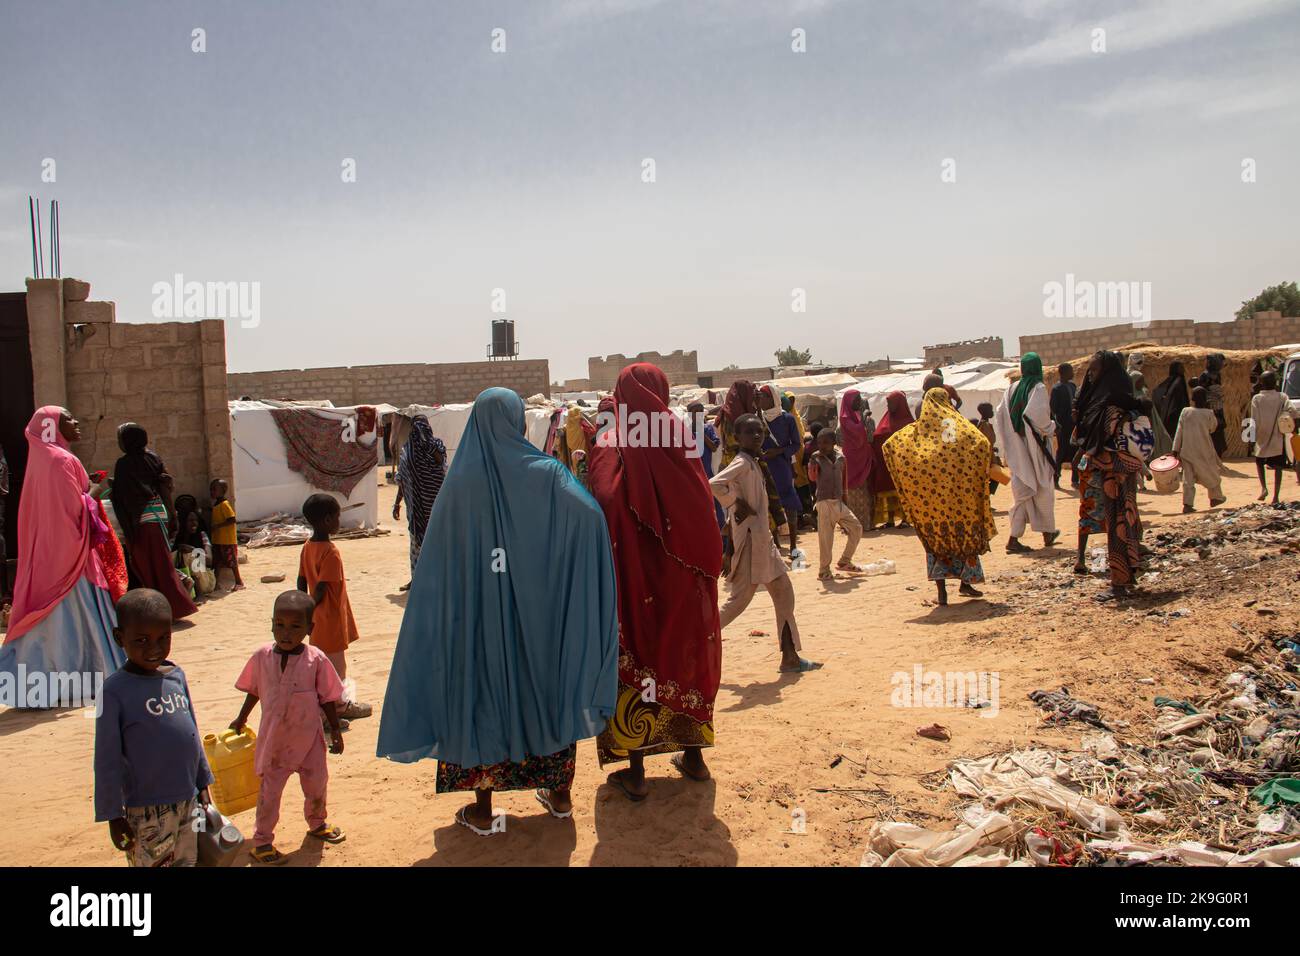 Campamento de refugiados (IDP - Desplazados Internos) que se refugia del conflicto armado entre grupos de oposición y gobierno. Foto de stock